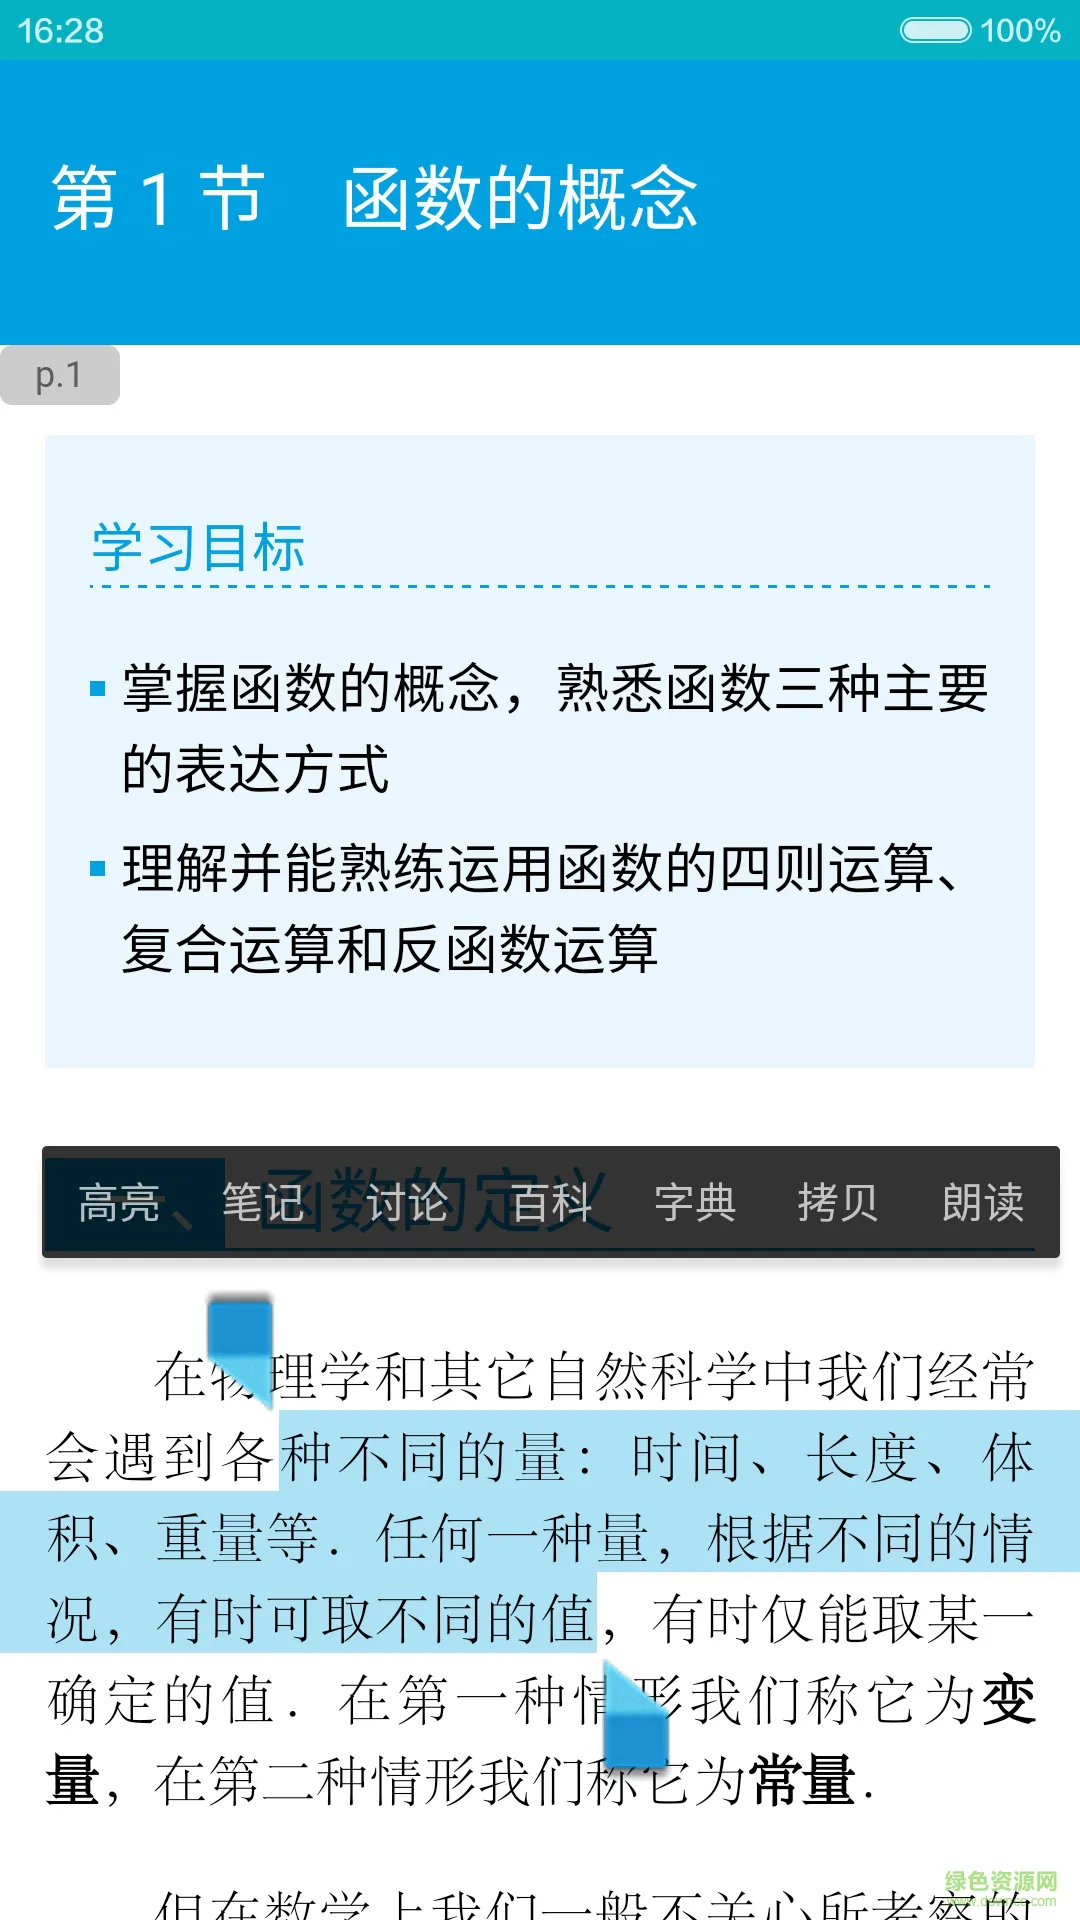 蓝墨云教材手机客户端 v3.6.8 官方安卓版 0